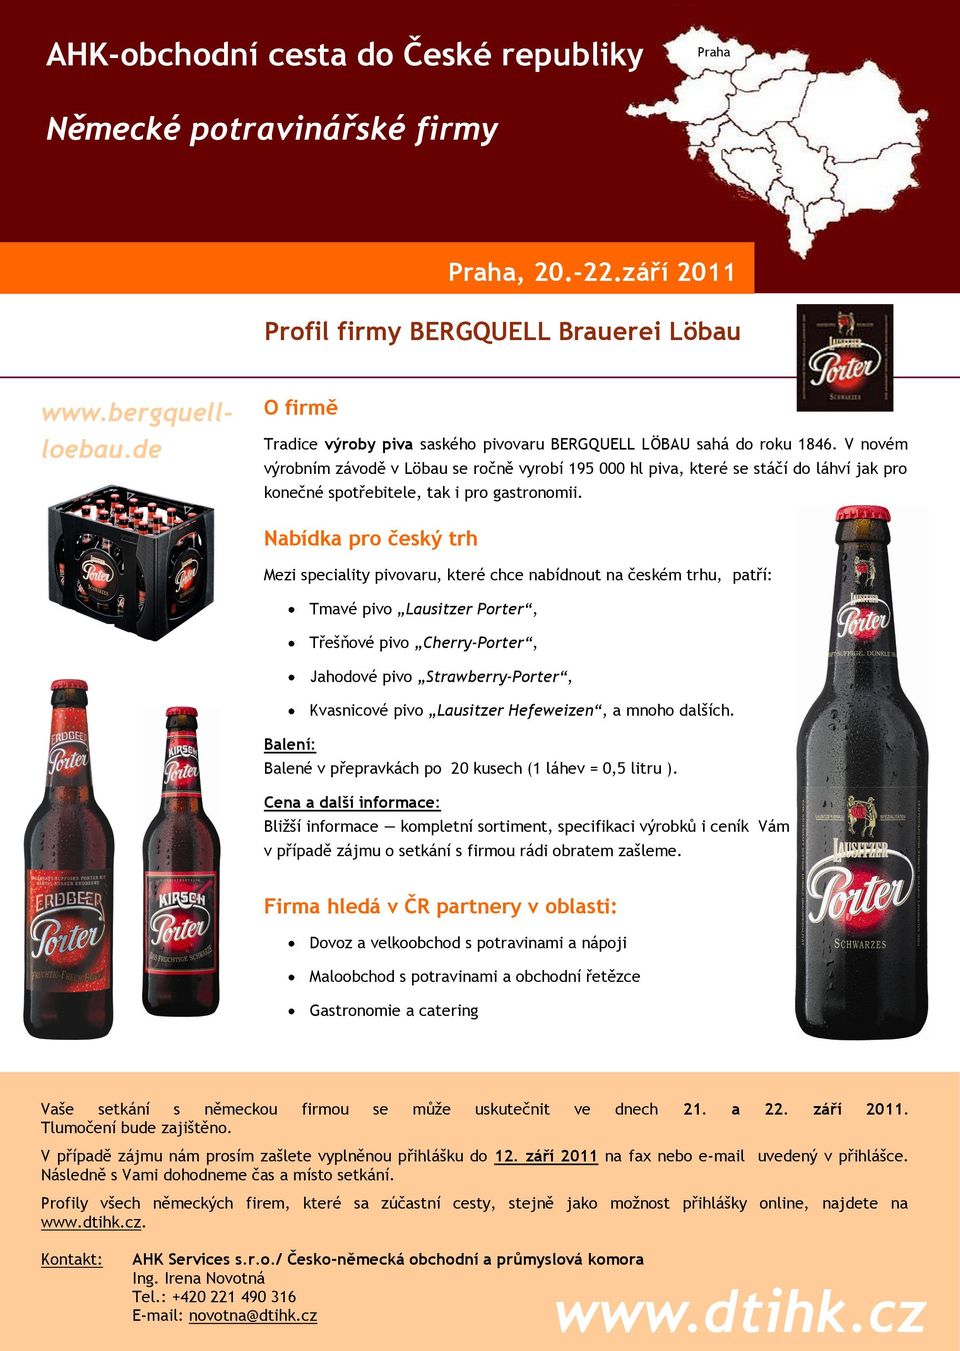 Mezi speciality pivovaru, které chce nabídnout na českém trhu, patří: Tmavé pivo Lausitzer Porter, Třešňové pivo Cherry-Porter, Jahodové pivo Strawberry-Porter, Kvasnicové pivo Lausitzer Hefeweizen,